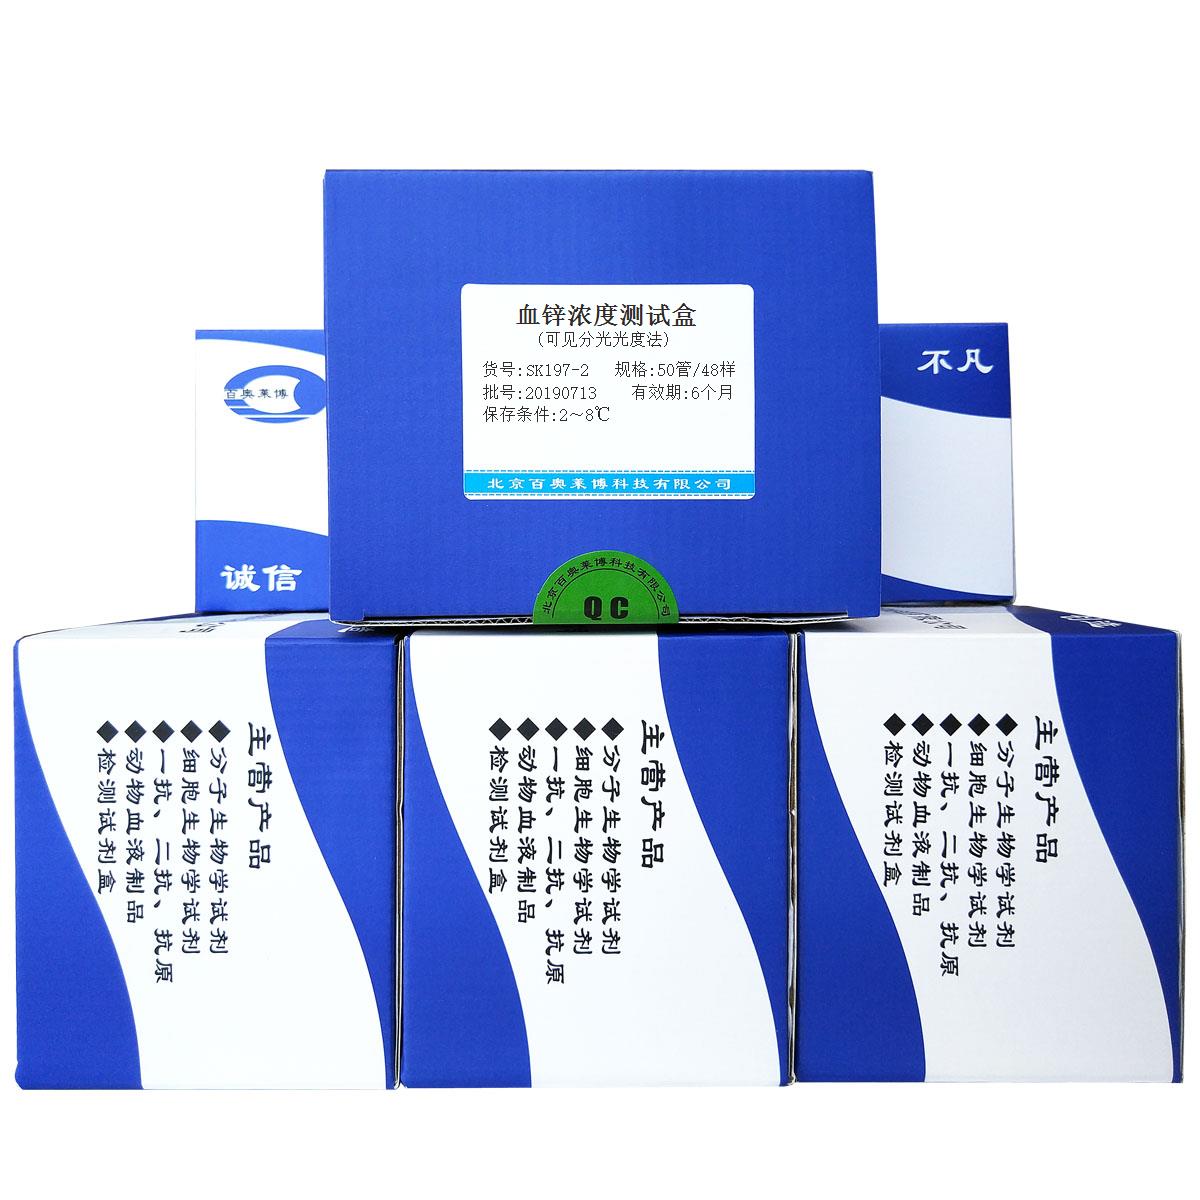 血锌浓度测试盒(可见分光光度法)北京供应商